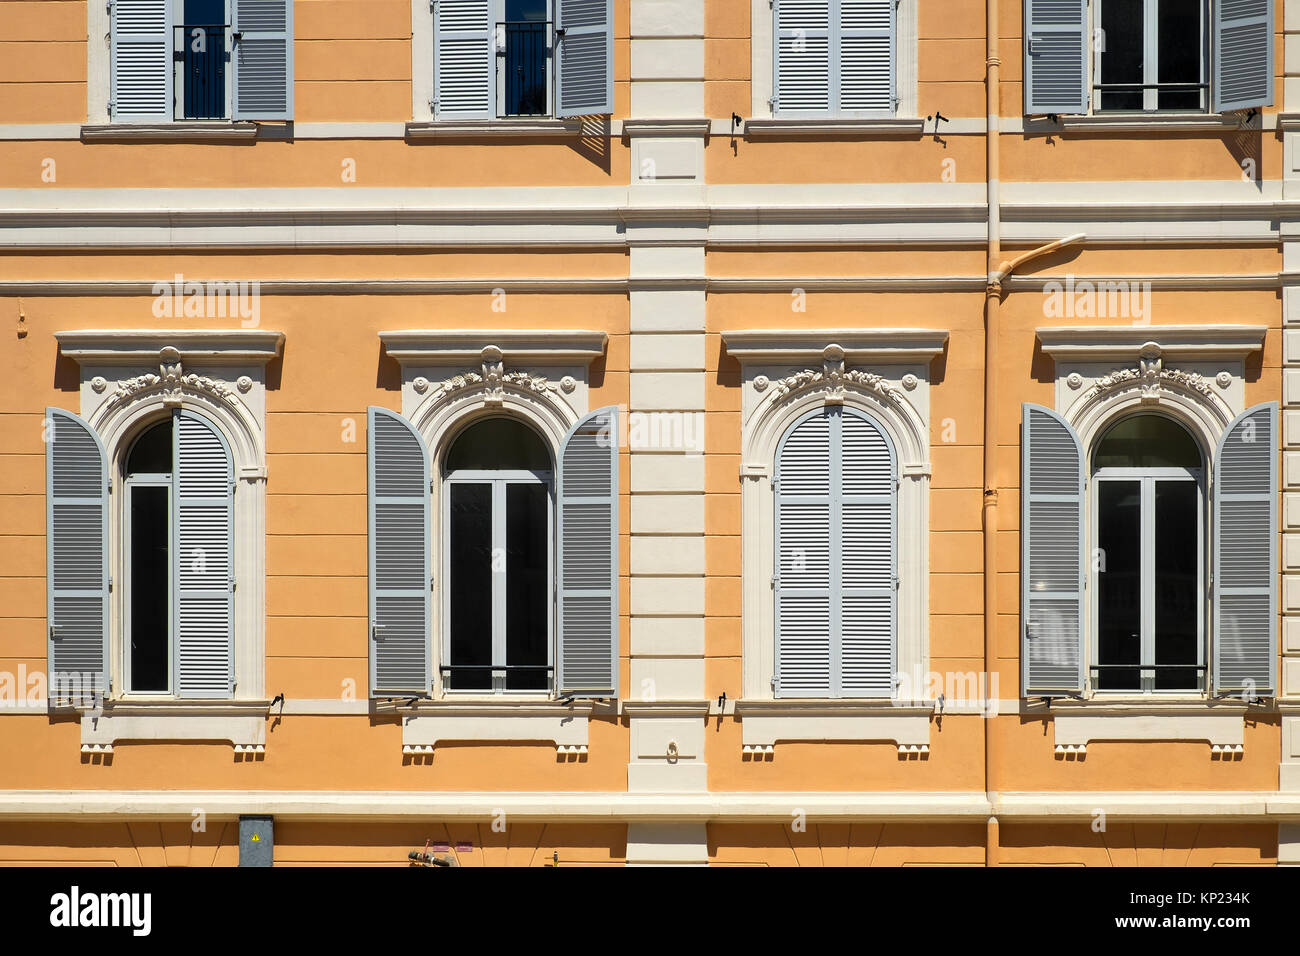 window shutters on a building in monaco Stock Photo